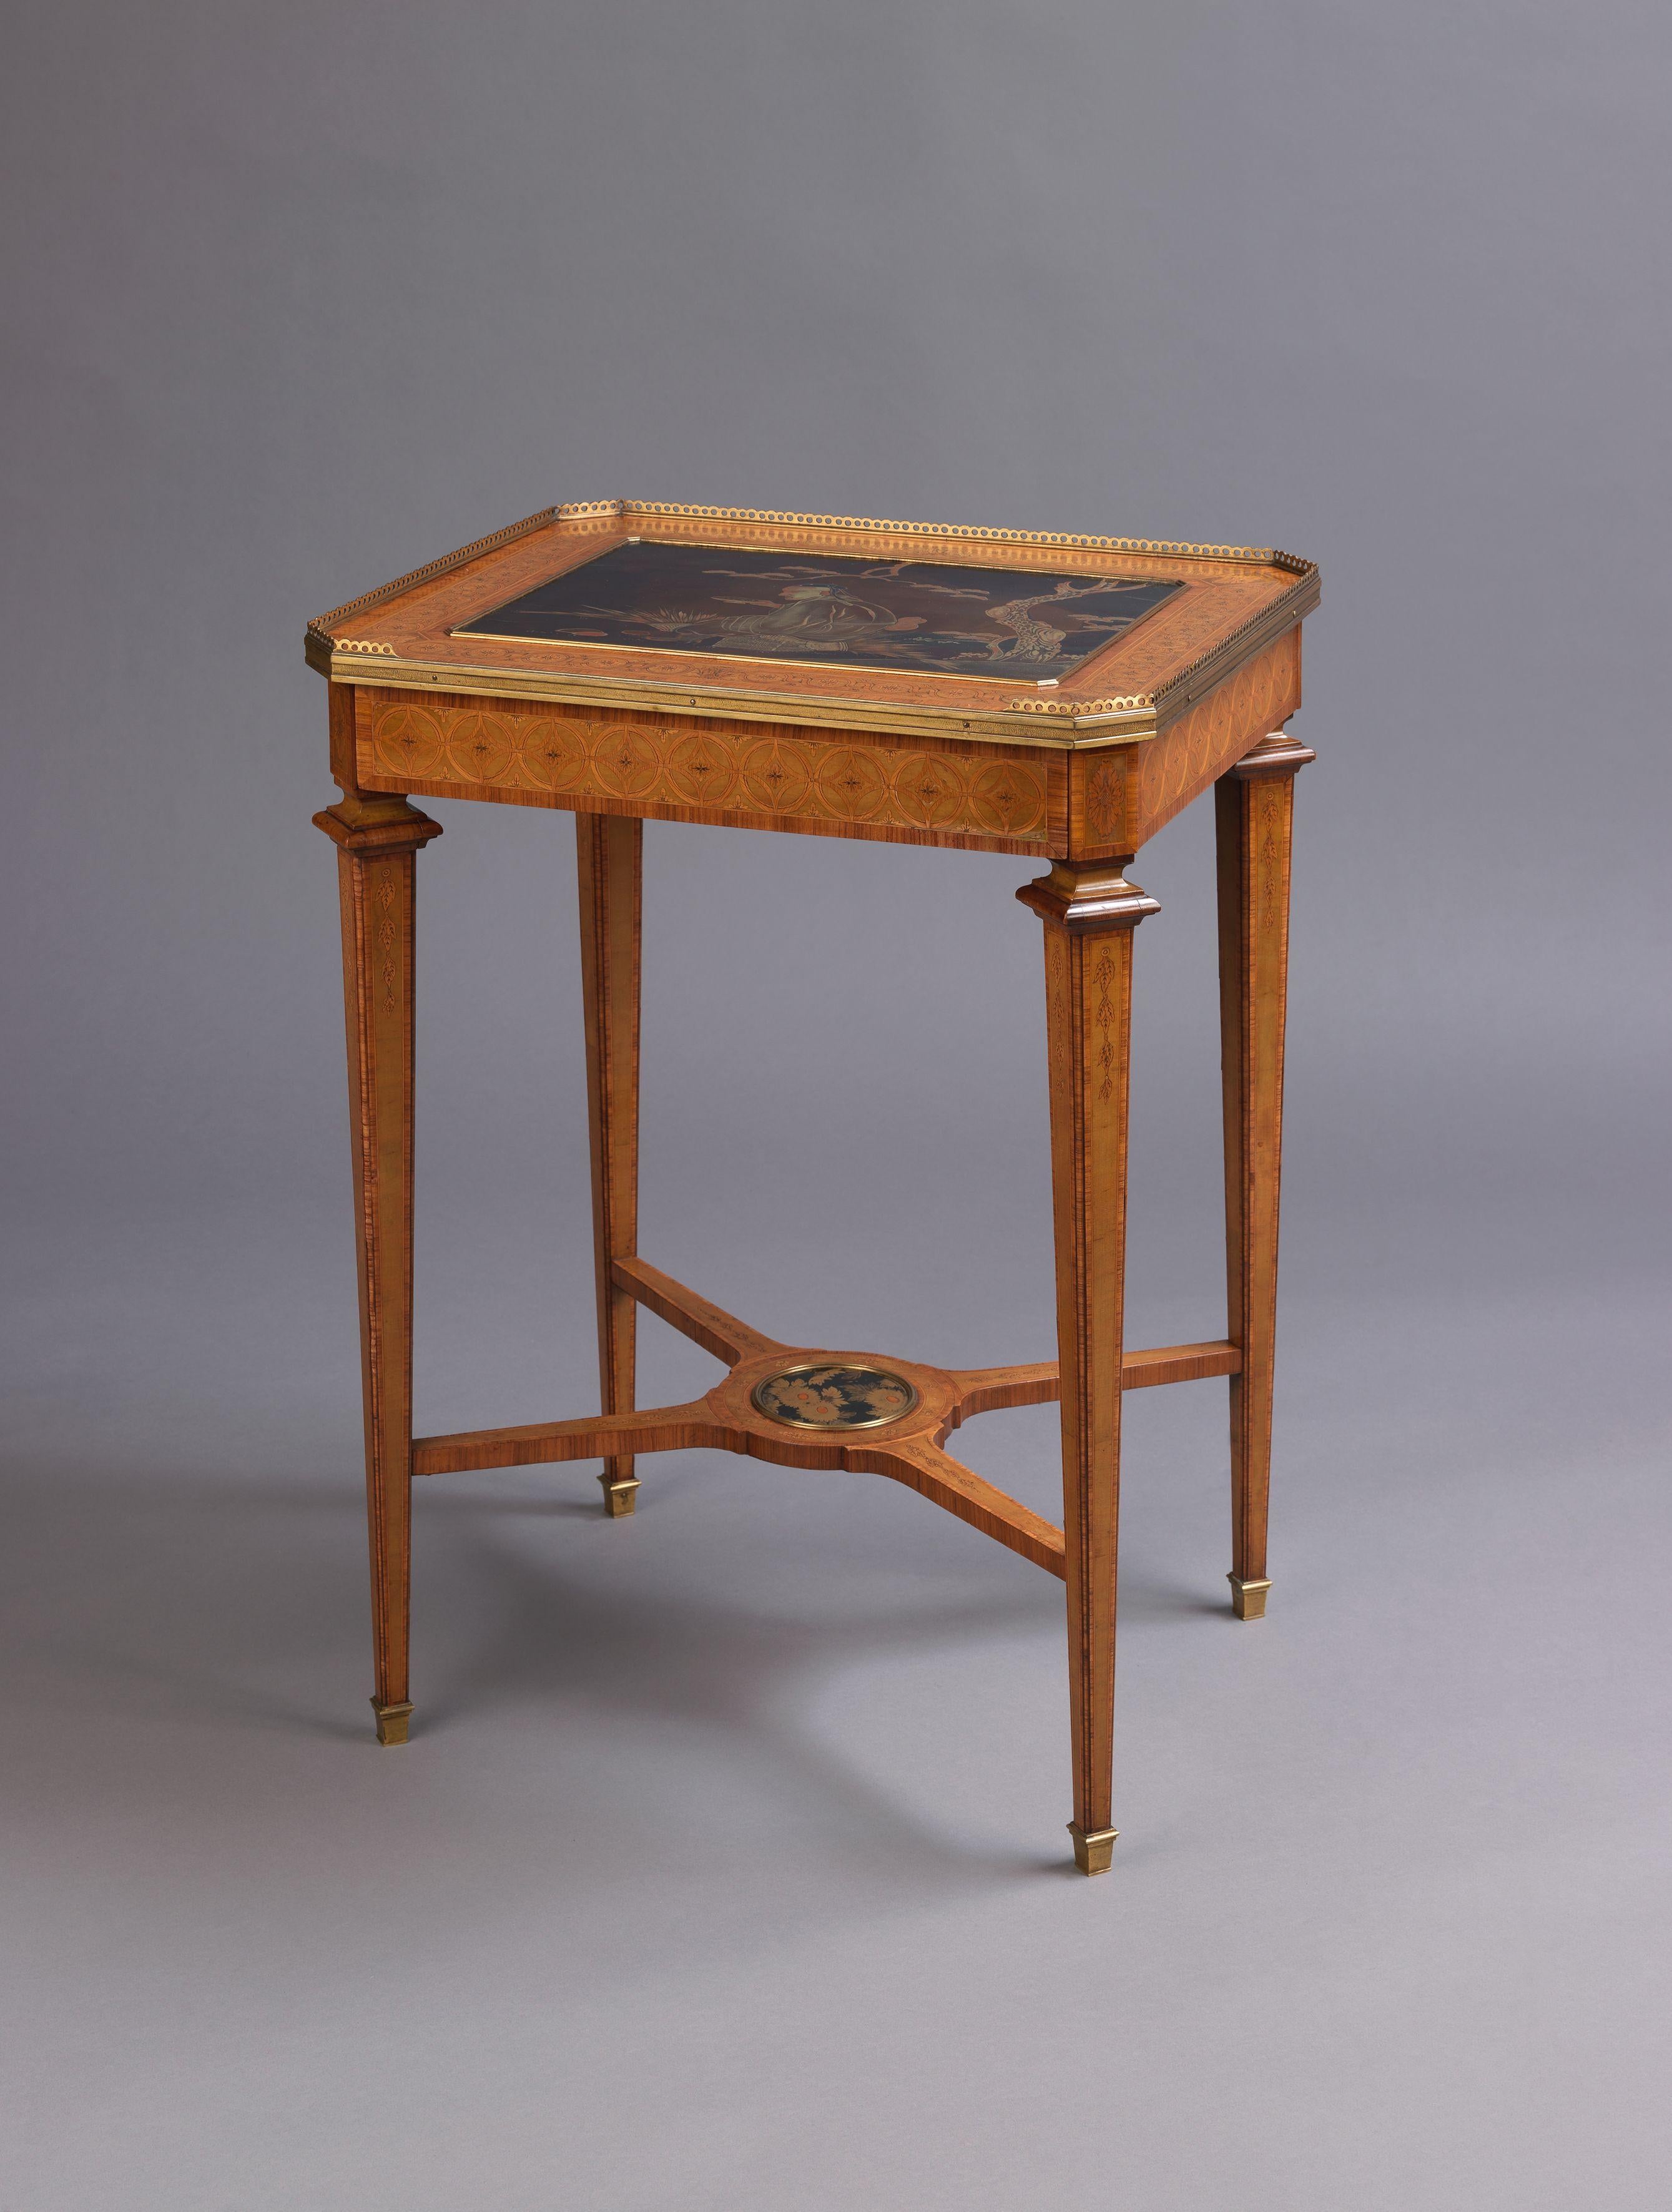 Une belle table marquetée avec un plateau en laque, vendue par Boin-Taburet. 

France, circa 1880. 

Estampillée sur la face inférieure « Boin-Taburet ». 

Cette petite table d'appoint attrayante et inhabituelle est finement incrustée d'un